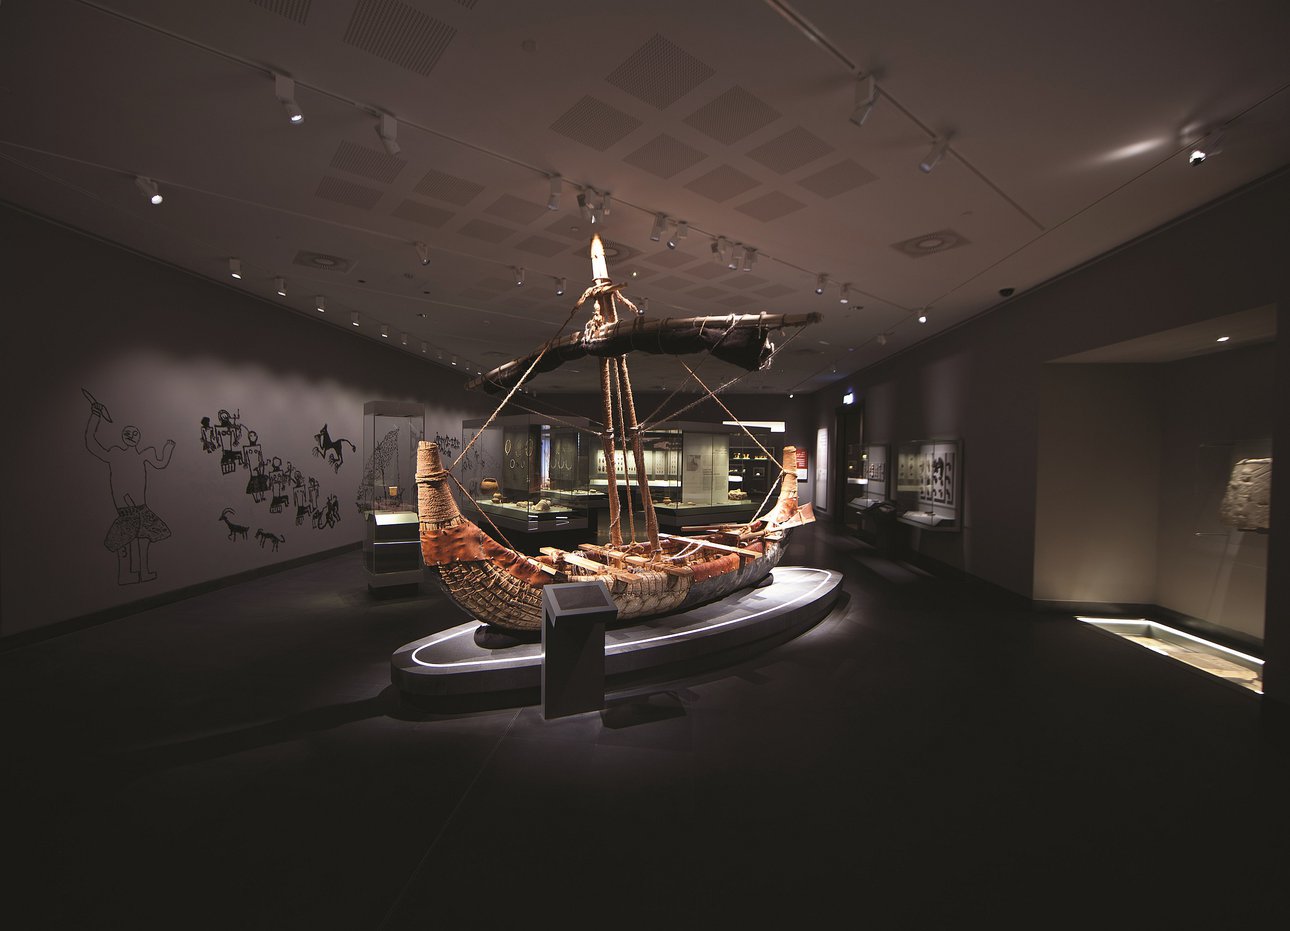 Современная копия камышовой лодки, на которой перевозили товары оманские купцы 2 тыс. лет назад